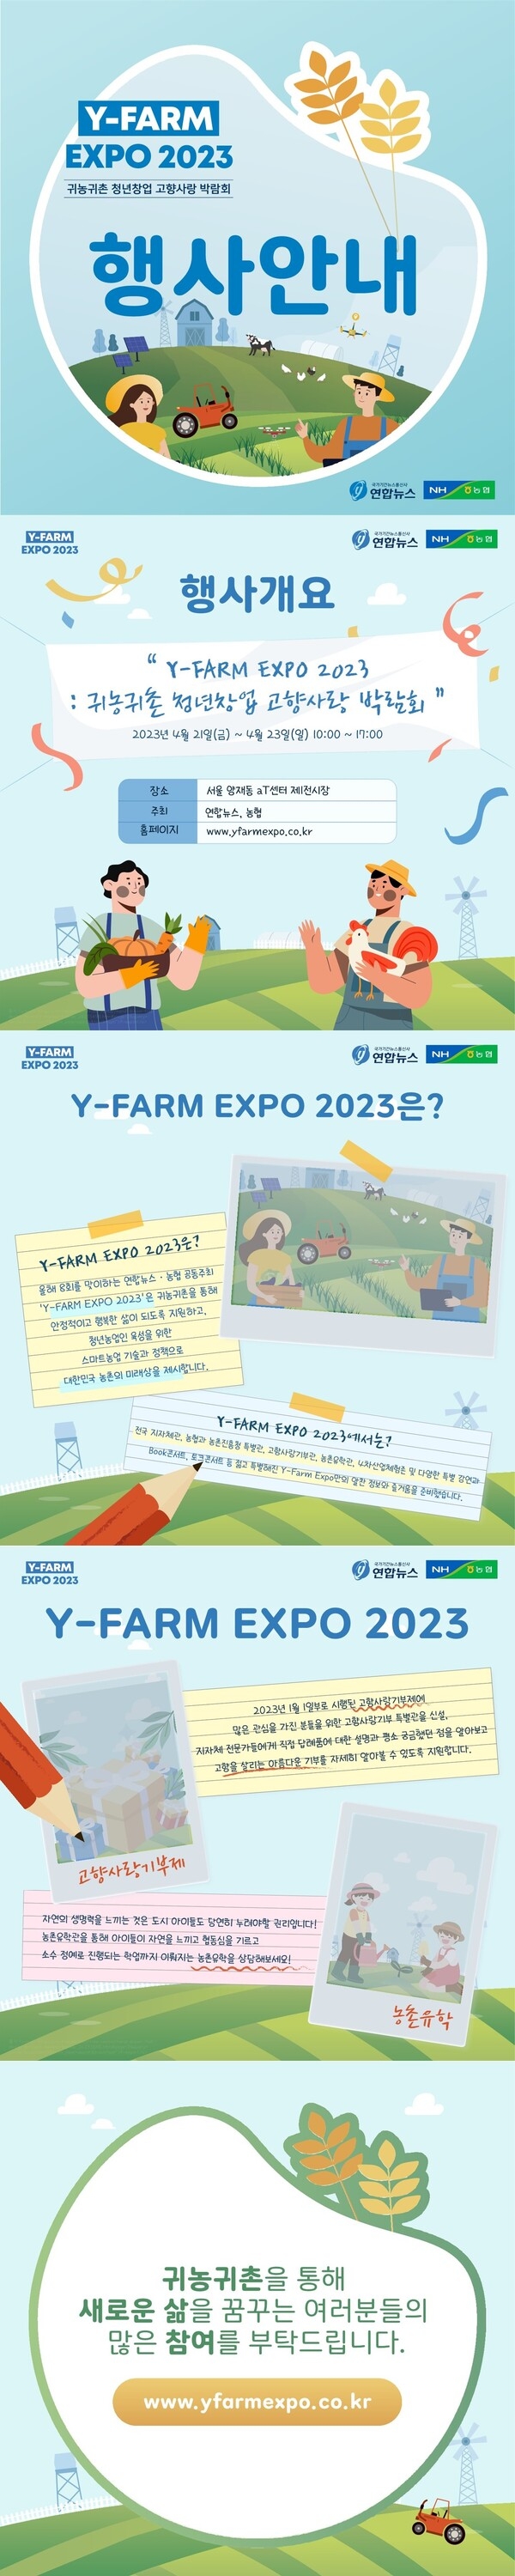 ﻿ [ Y-FARM EXPO 2023 귀농귀촌 청년창업 고향사랑 박람회] 행사 안내 이미지 1